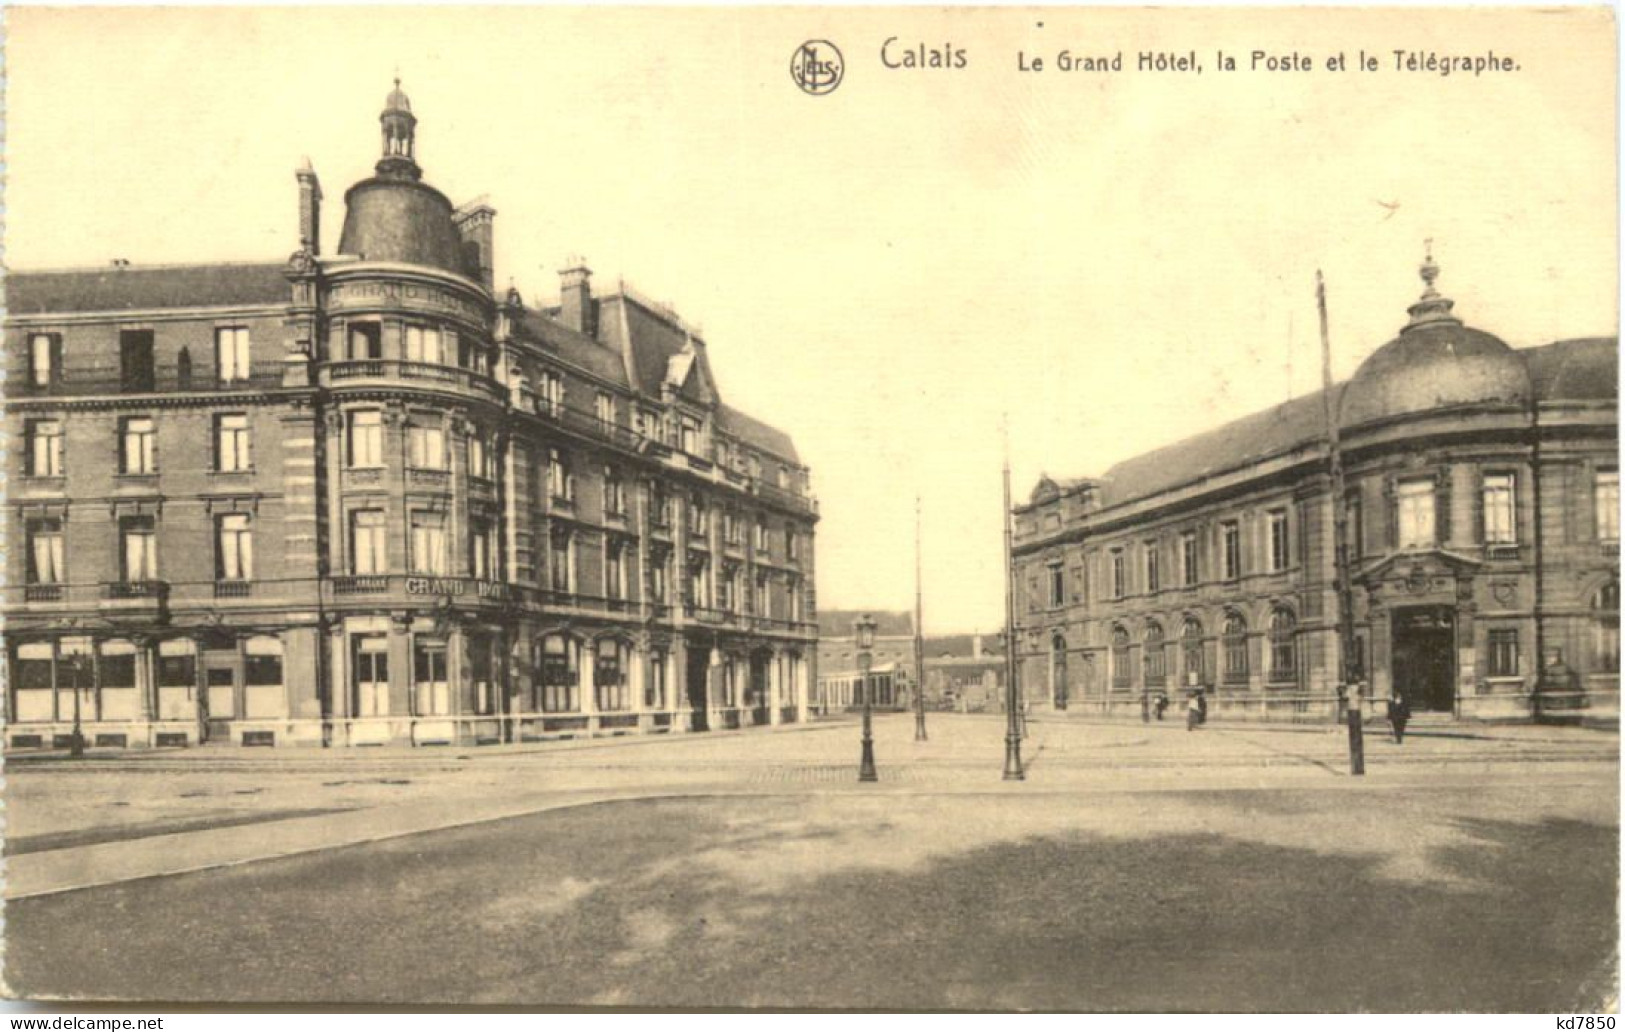 Calais, Le Grand Hotel - Calais